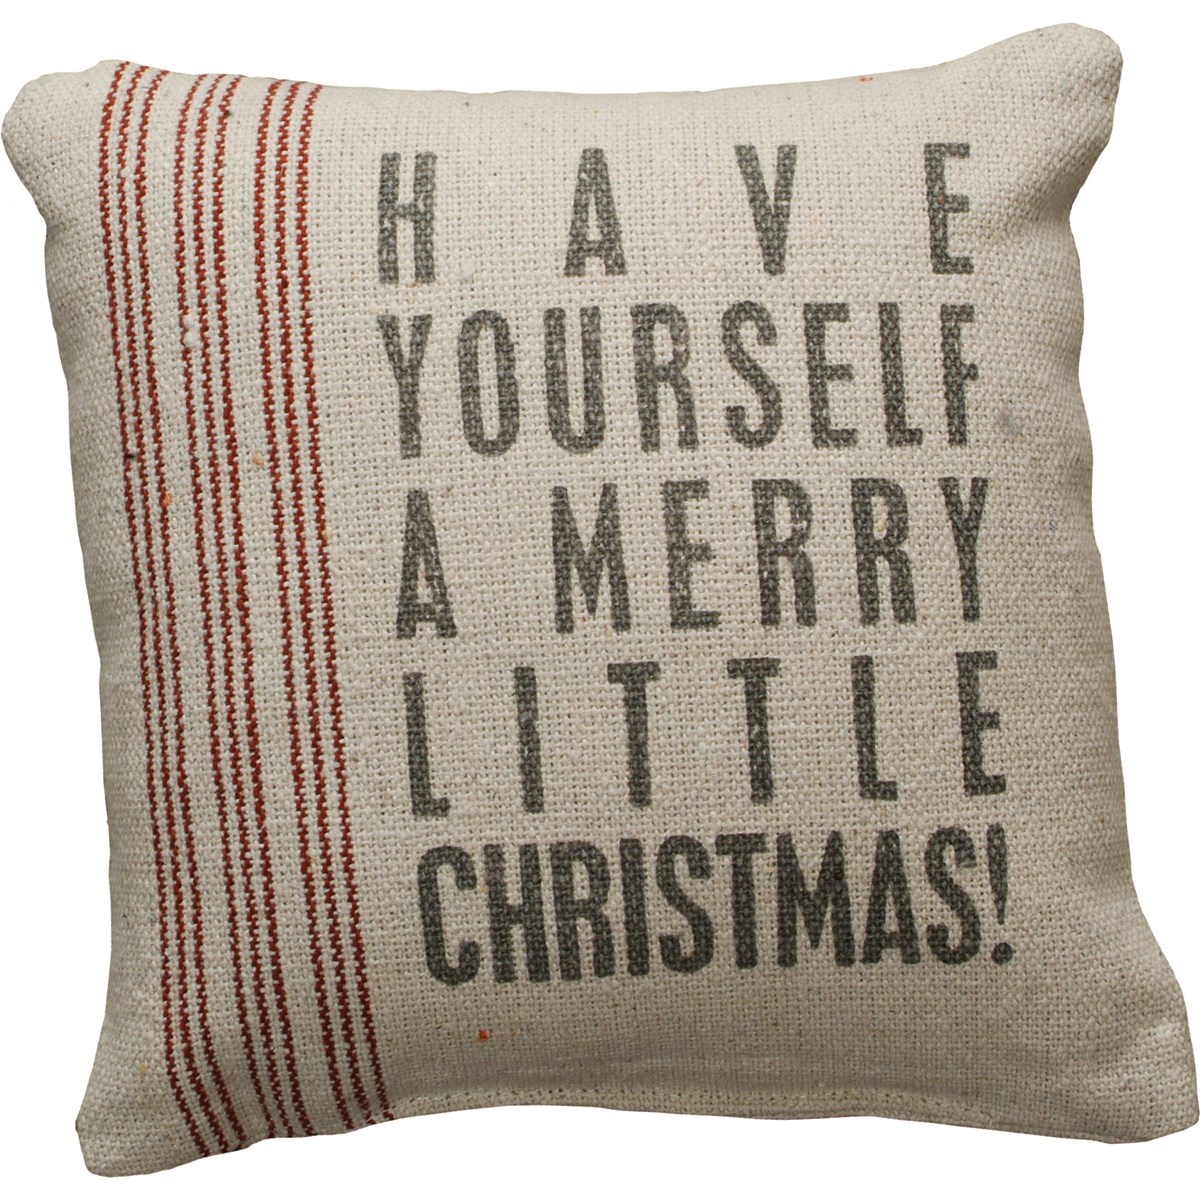 Merry Little Christmas Pillow - Cotton, Zipper